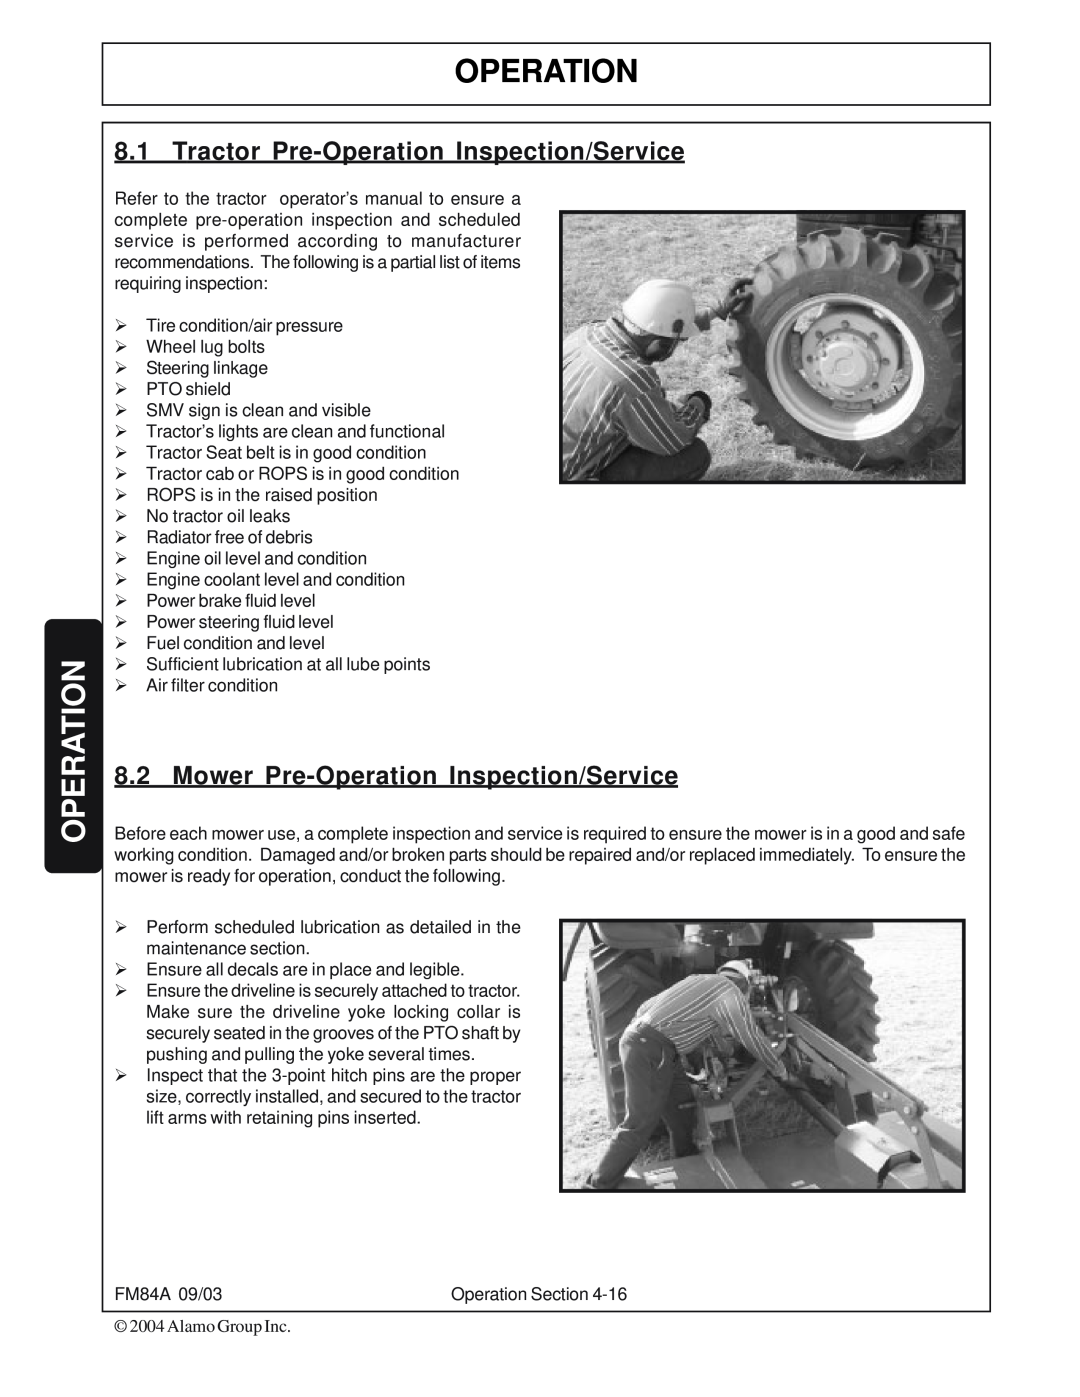 Servis-Rhino FM84A manual Tractor Pre-OperationInspection/Service, Mower Pre-OperationInspection/Service 